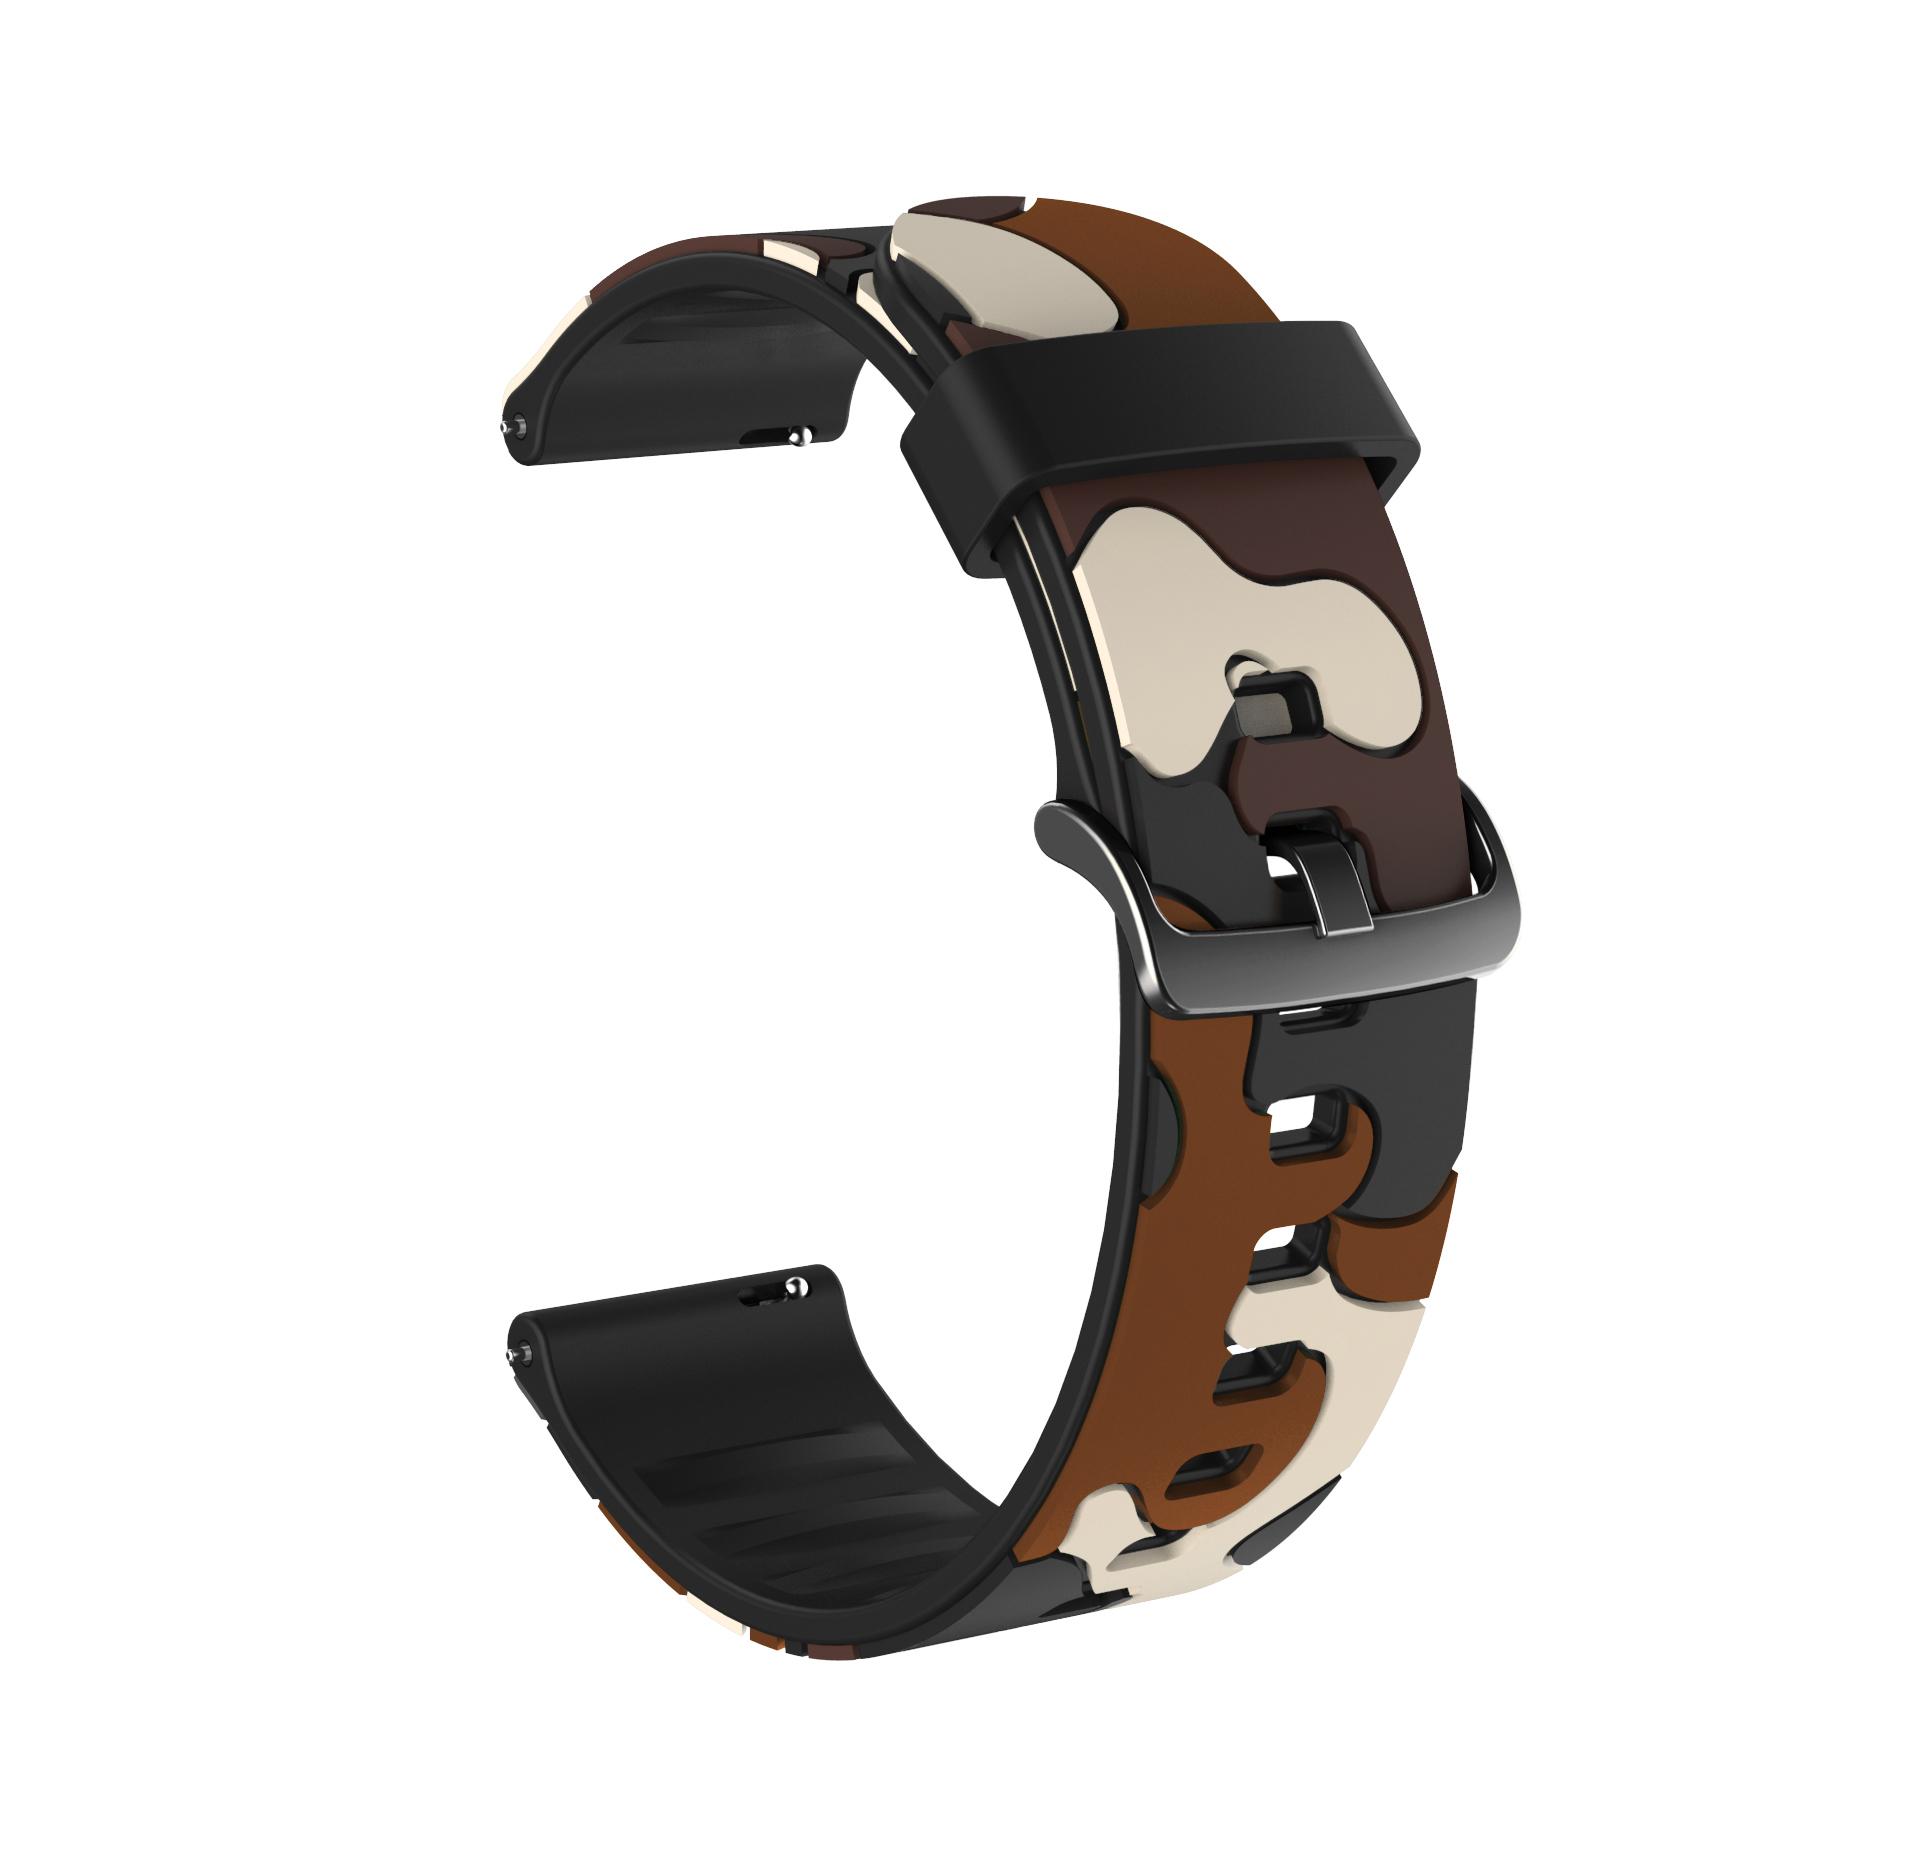 Изображение товара: Ремешок силиконовый для Huawei Watch GT GT2 42 мм 46 мм, цветной браслет для смарт-часов, аксессуары для наручных часов, 20 мм 22 мм